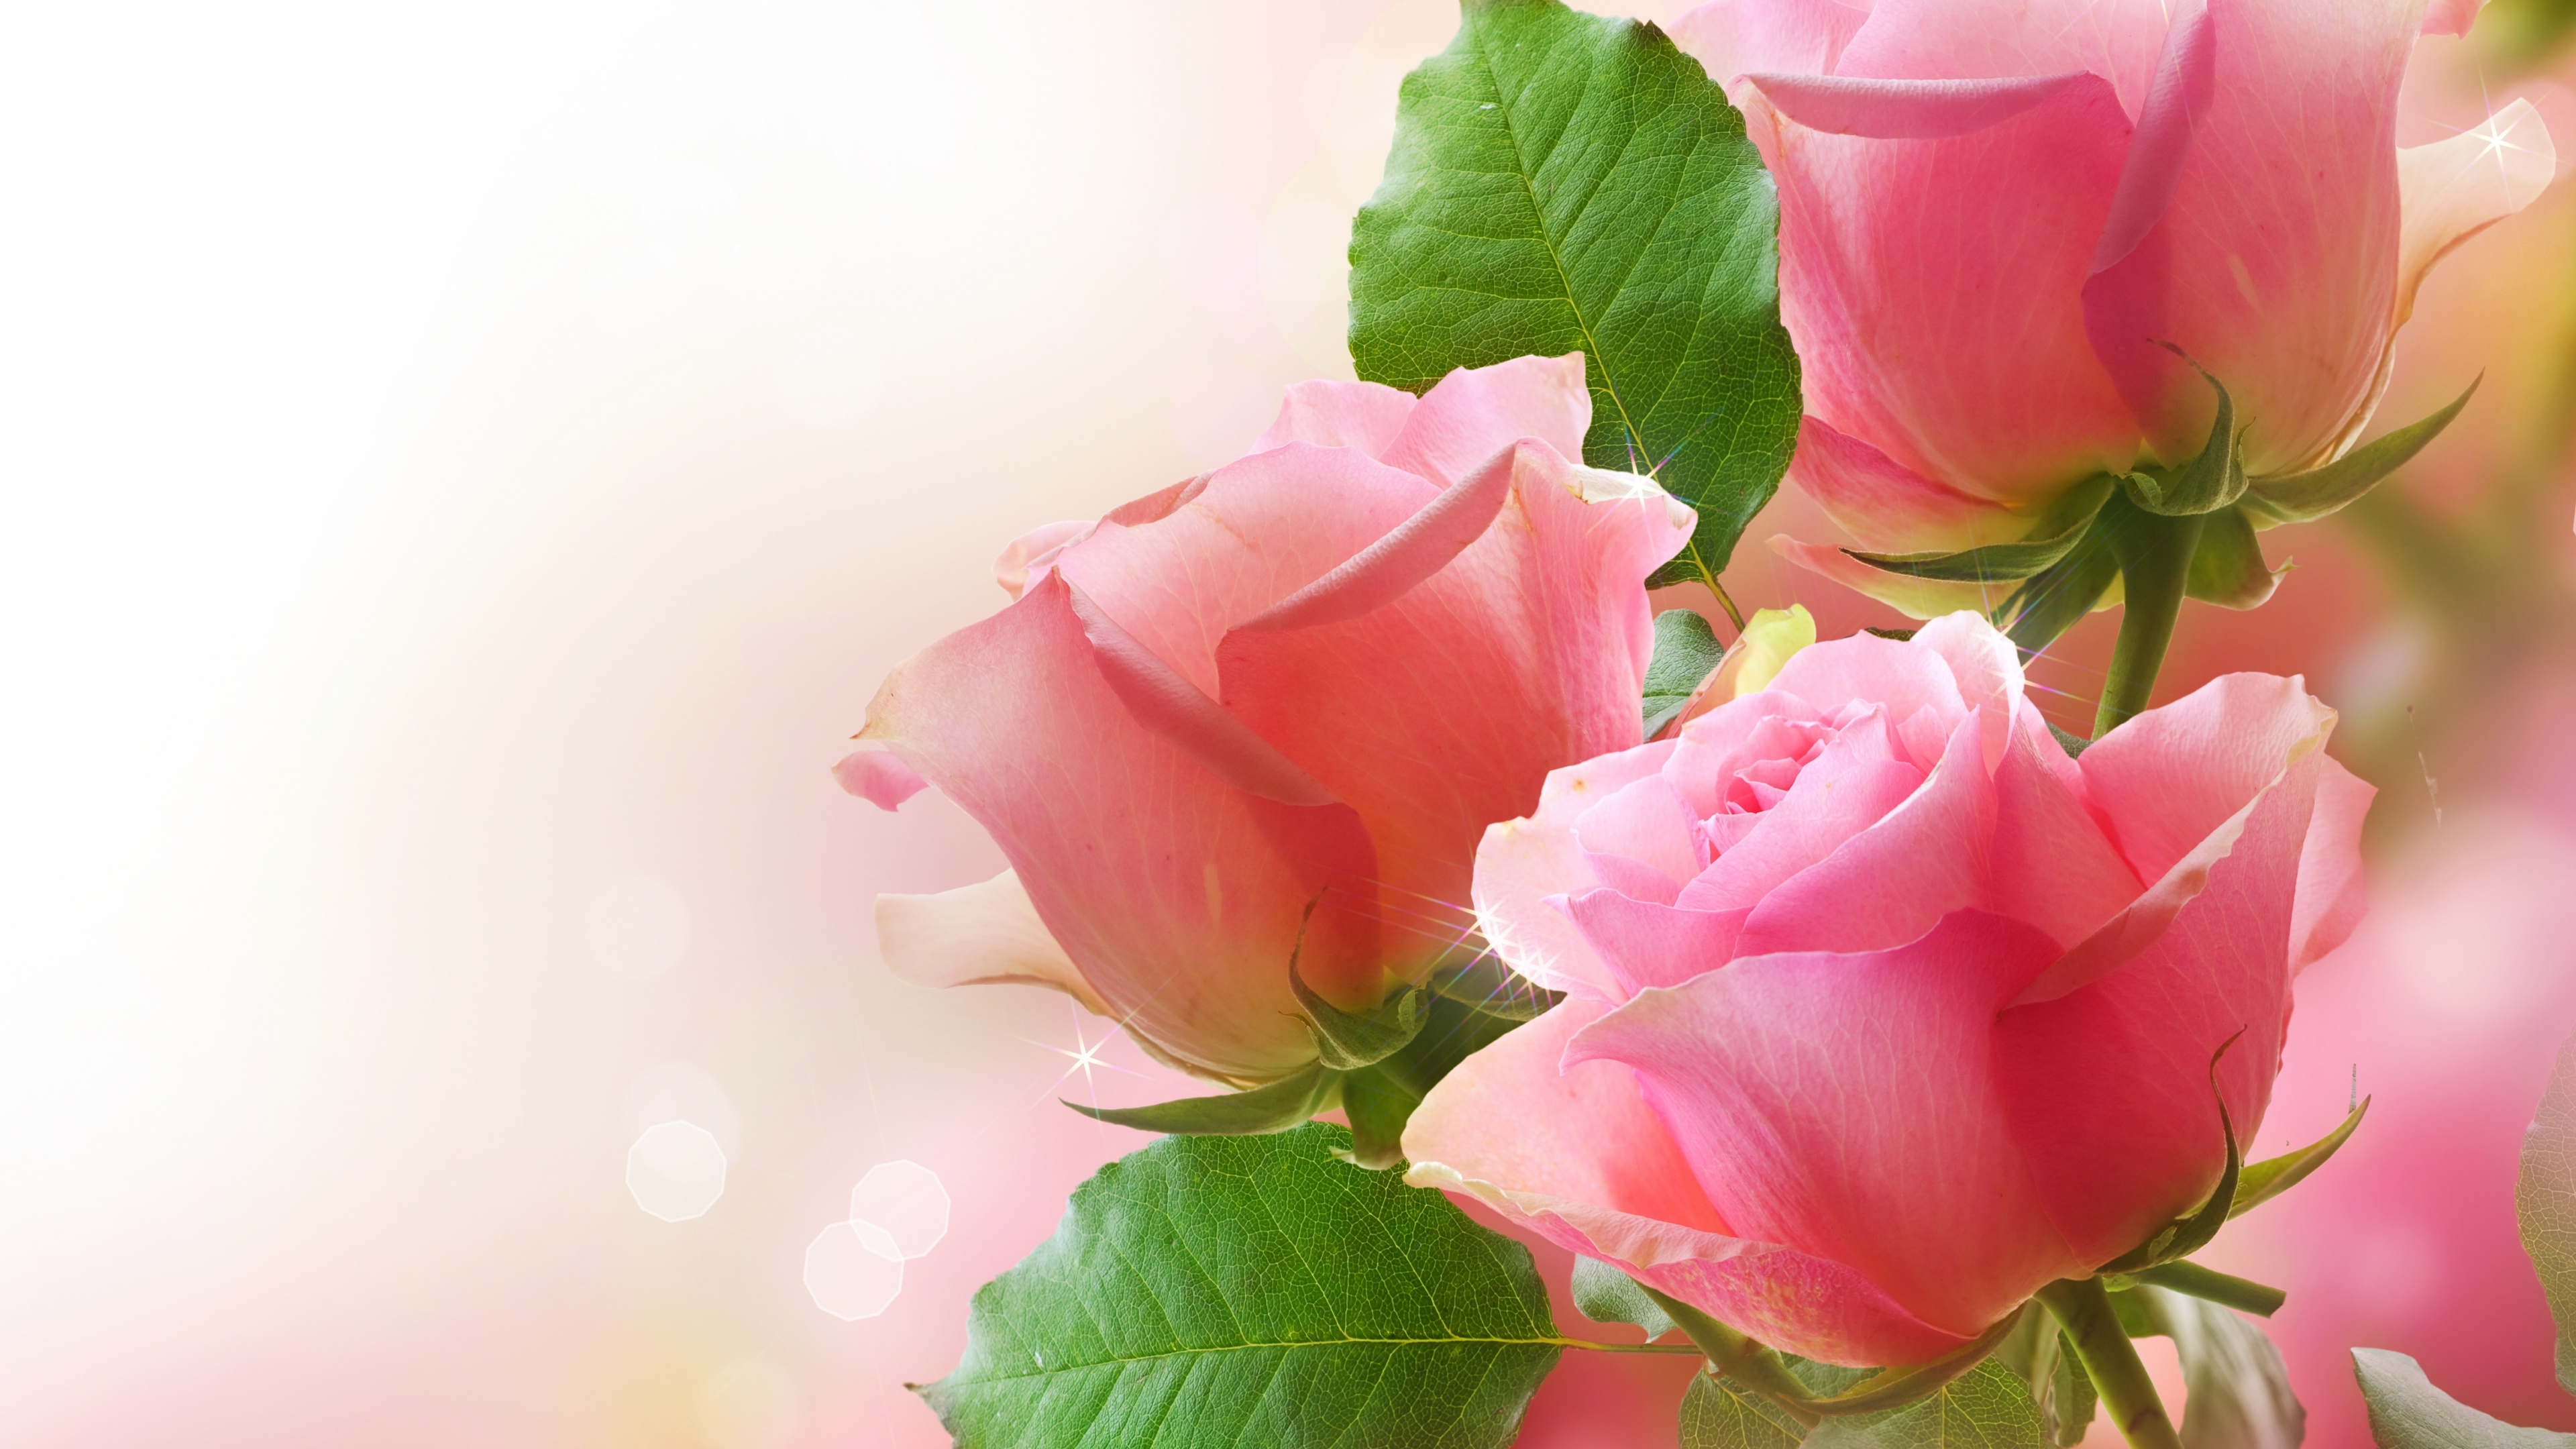 花卉设计, 粉红色, 显花植物, 玫瑰花园, 玫瑰家庭 壁纸 3840x2160 允许